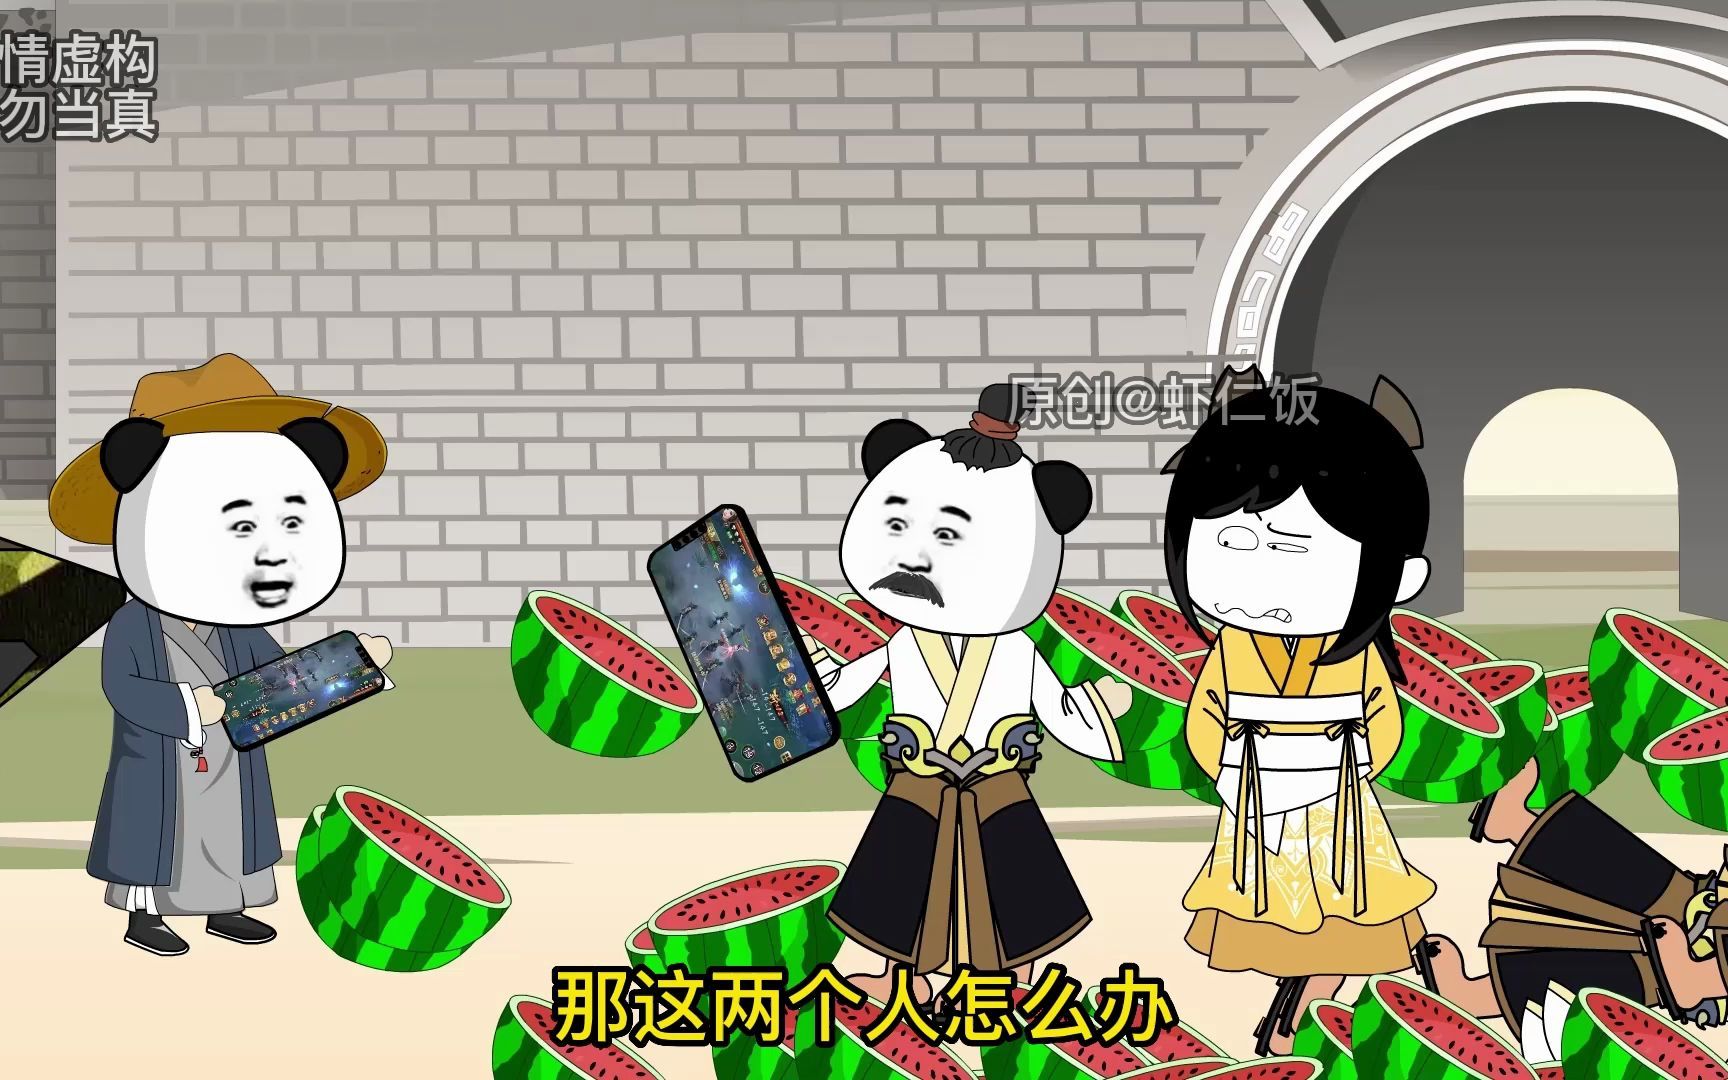 《我在大唐卖军火》第39集-虾仁饭动画-虾仁饭动画-哔哩哔哩视频